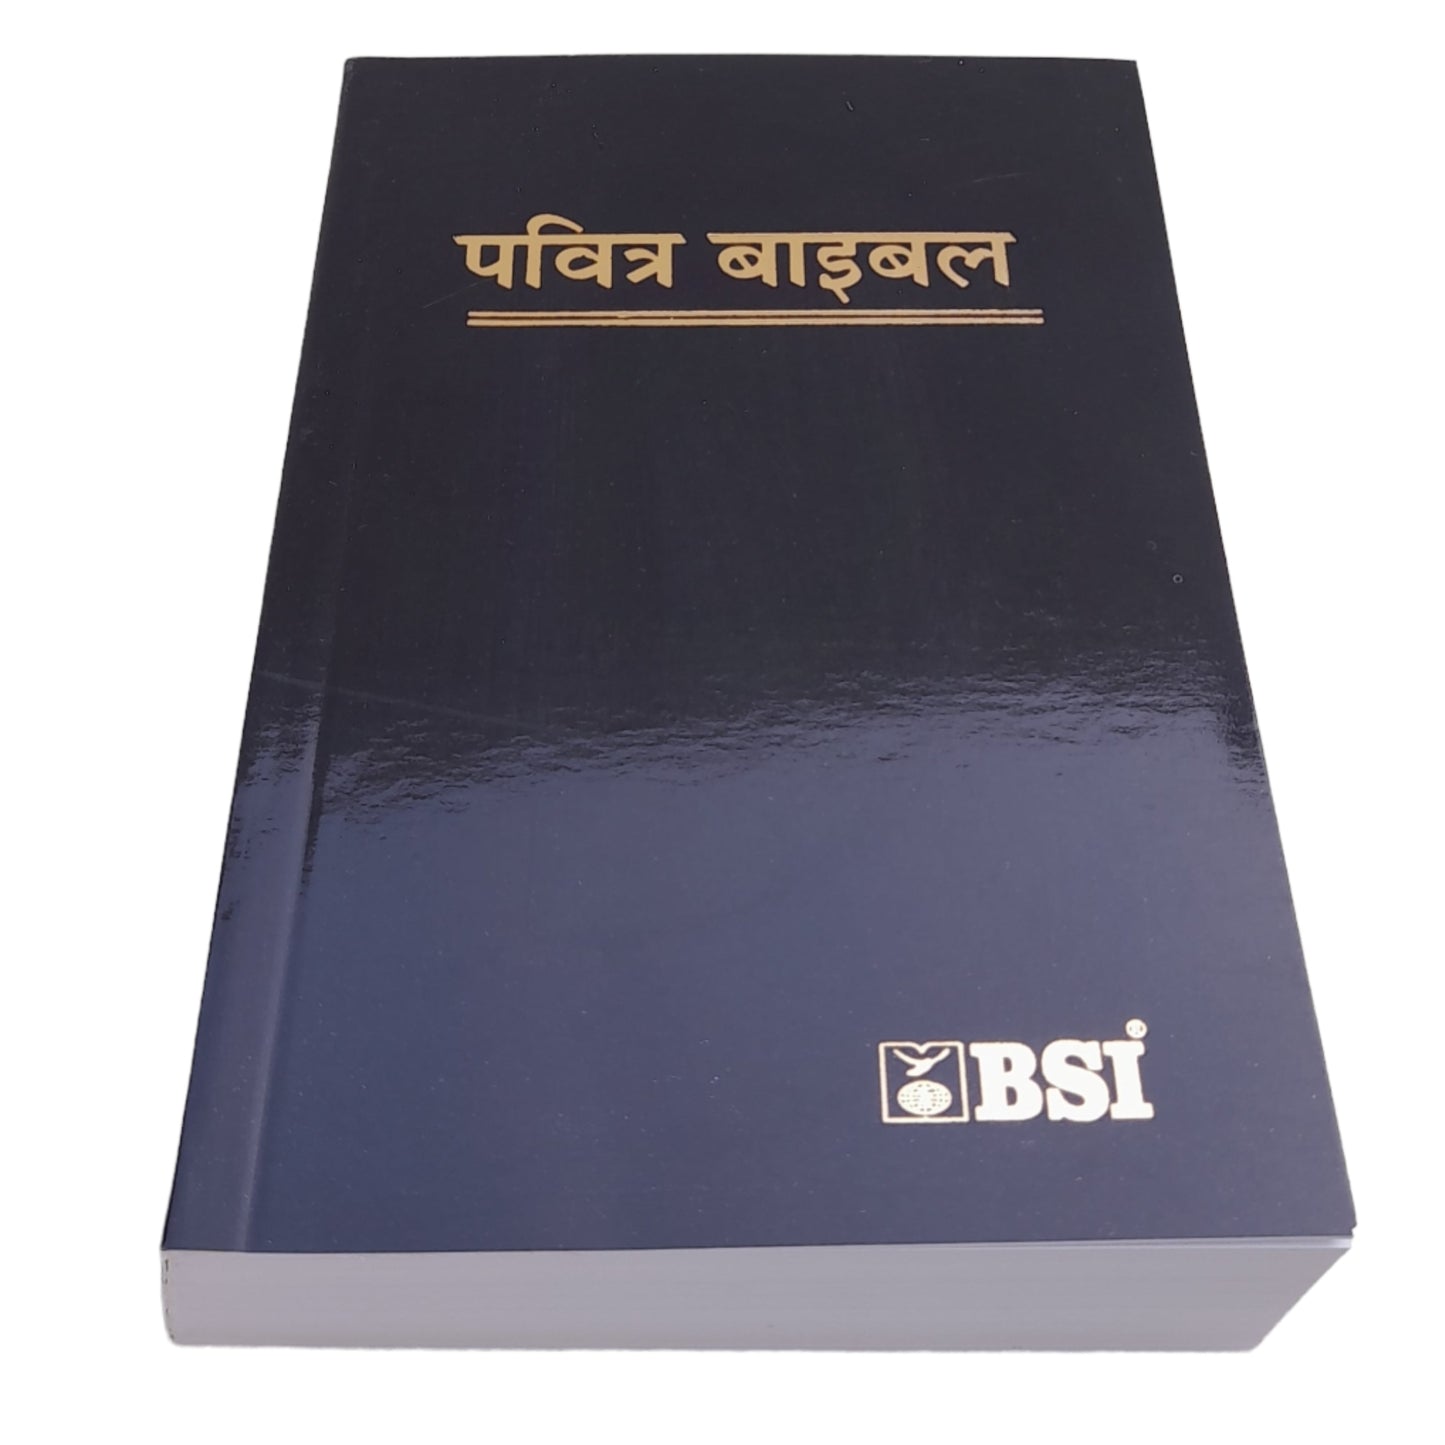 The Holy Small Hindi Bible